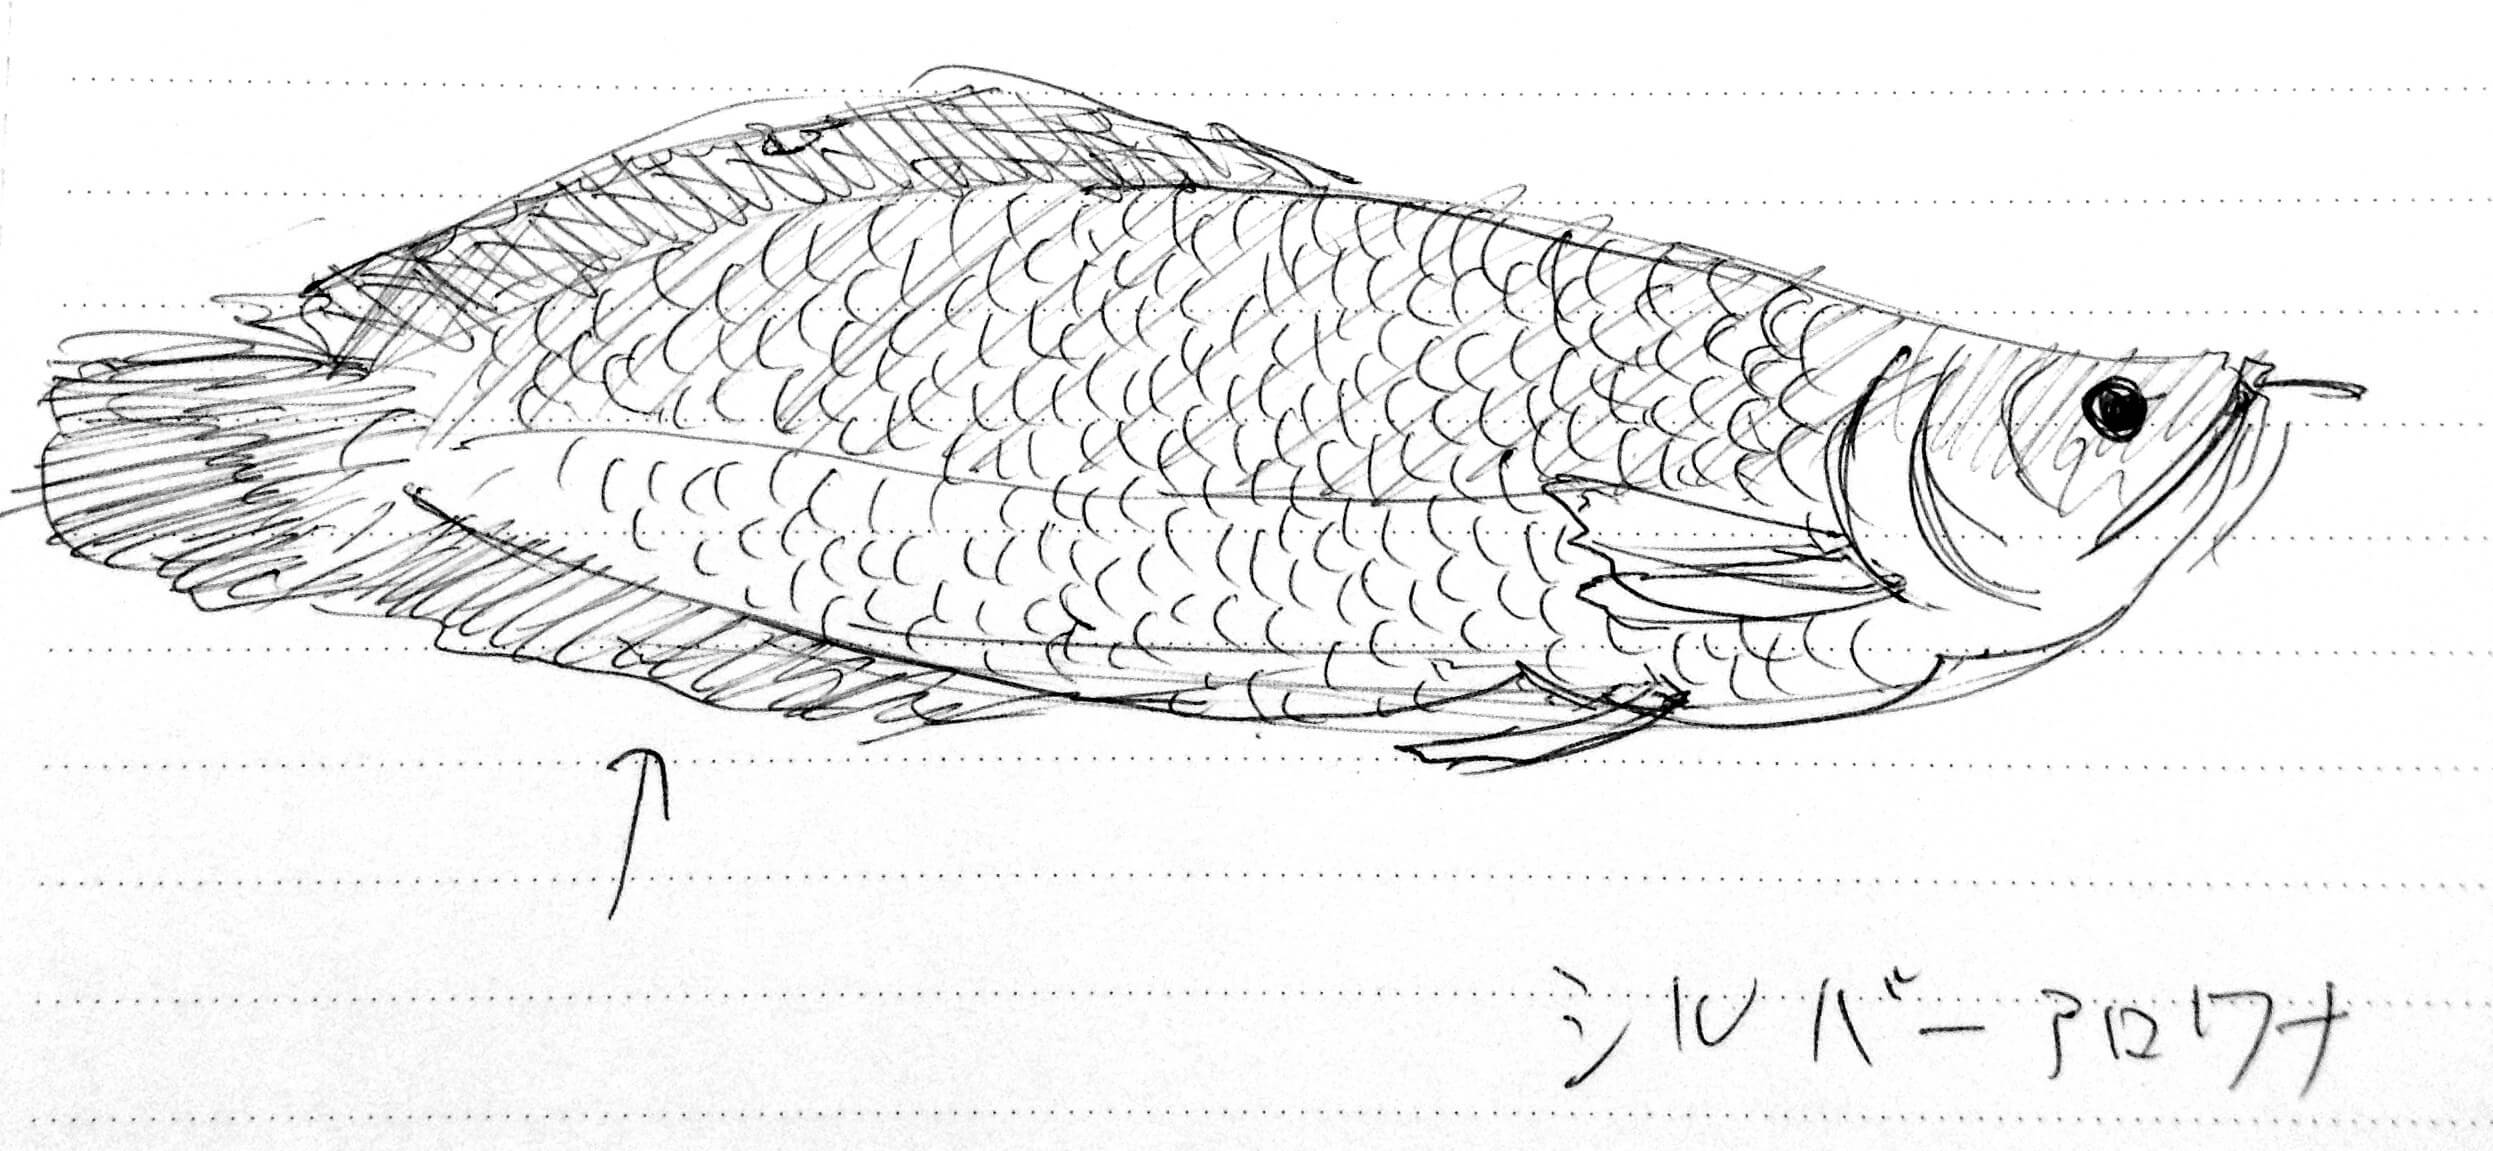 シルバーアロワナイラスト クロッキー ペットとしても人気の熱帯雨林の魚 魚イラスト クロッキーを素人がひたすら描き続けるブログ